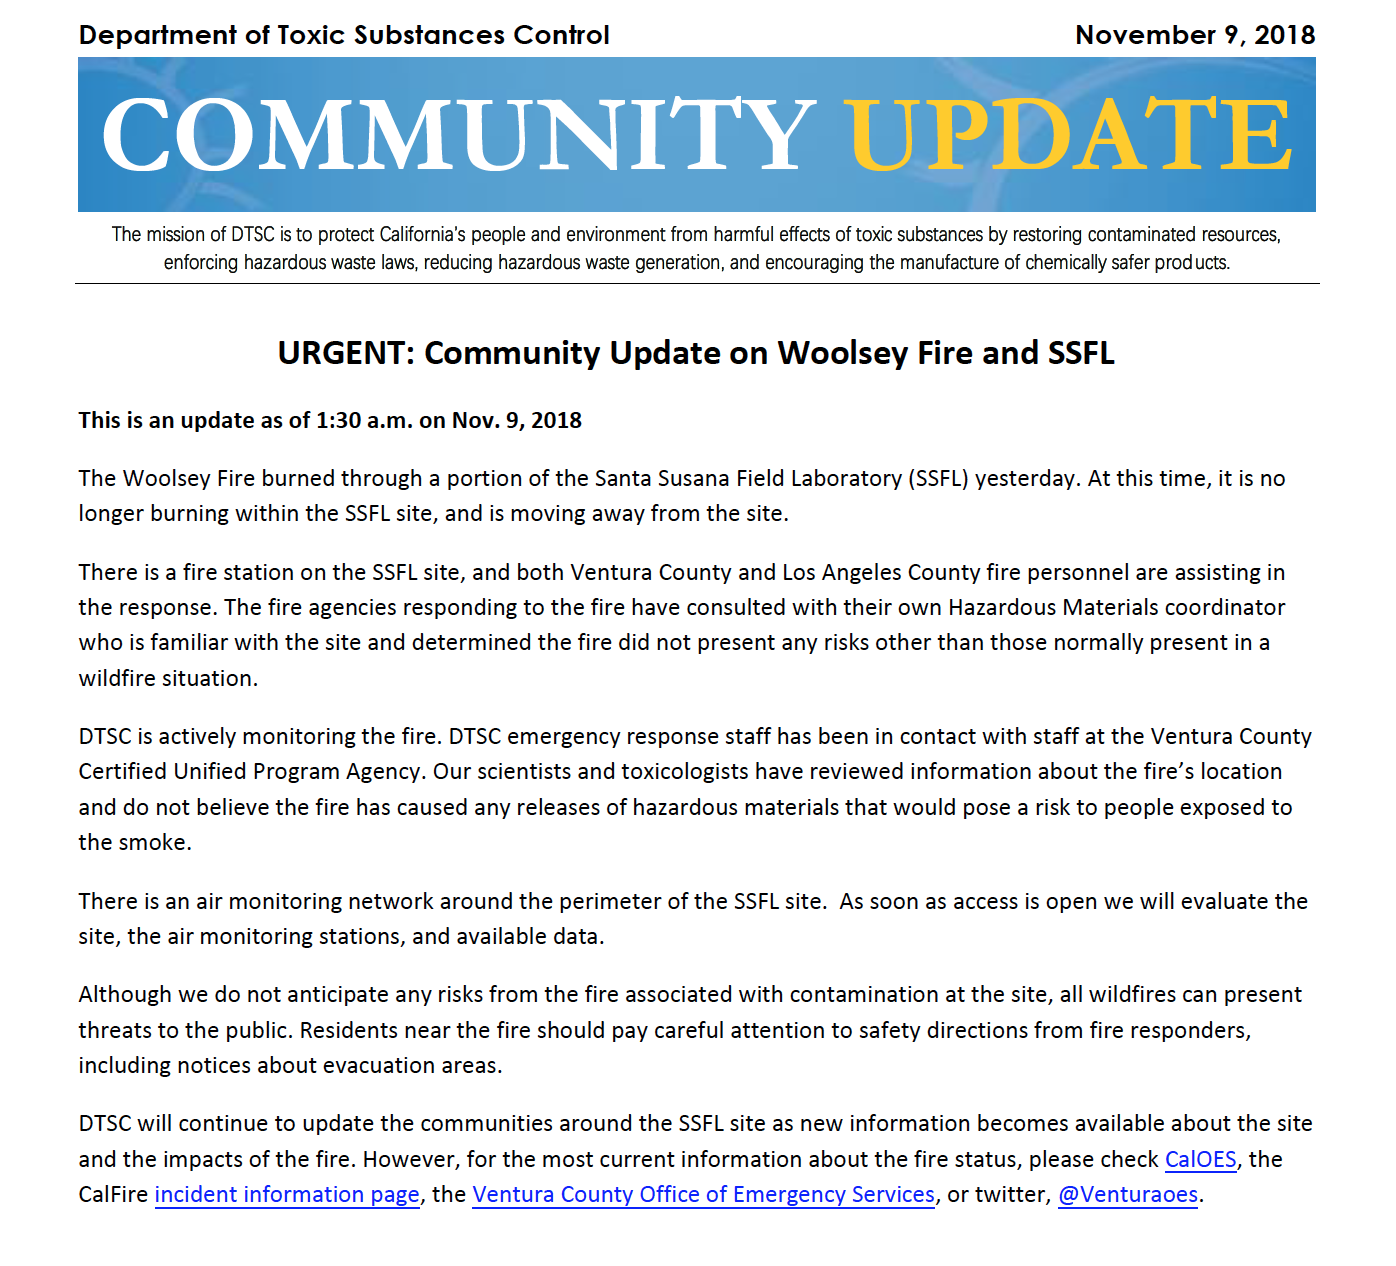 Community Update: November 9, 2018 (Copy) (Copy)